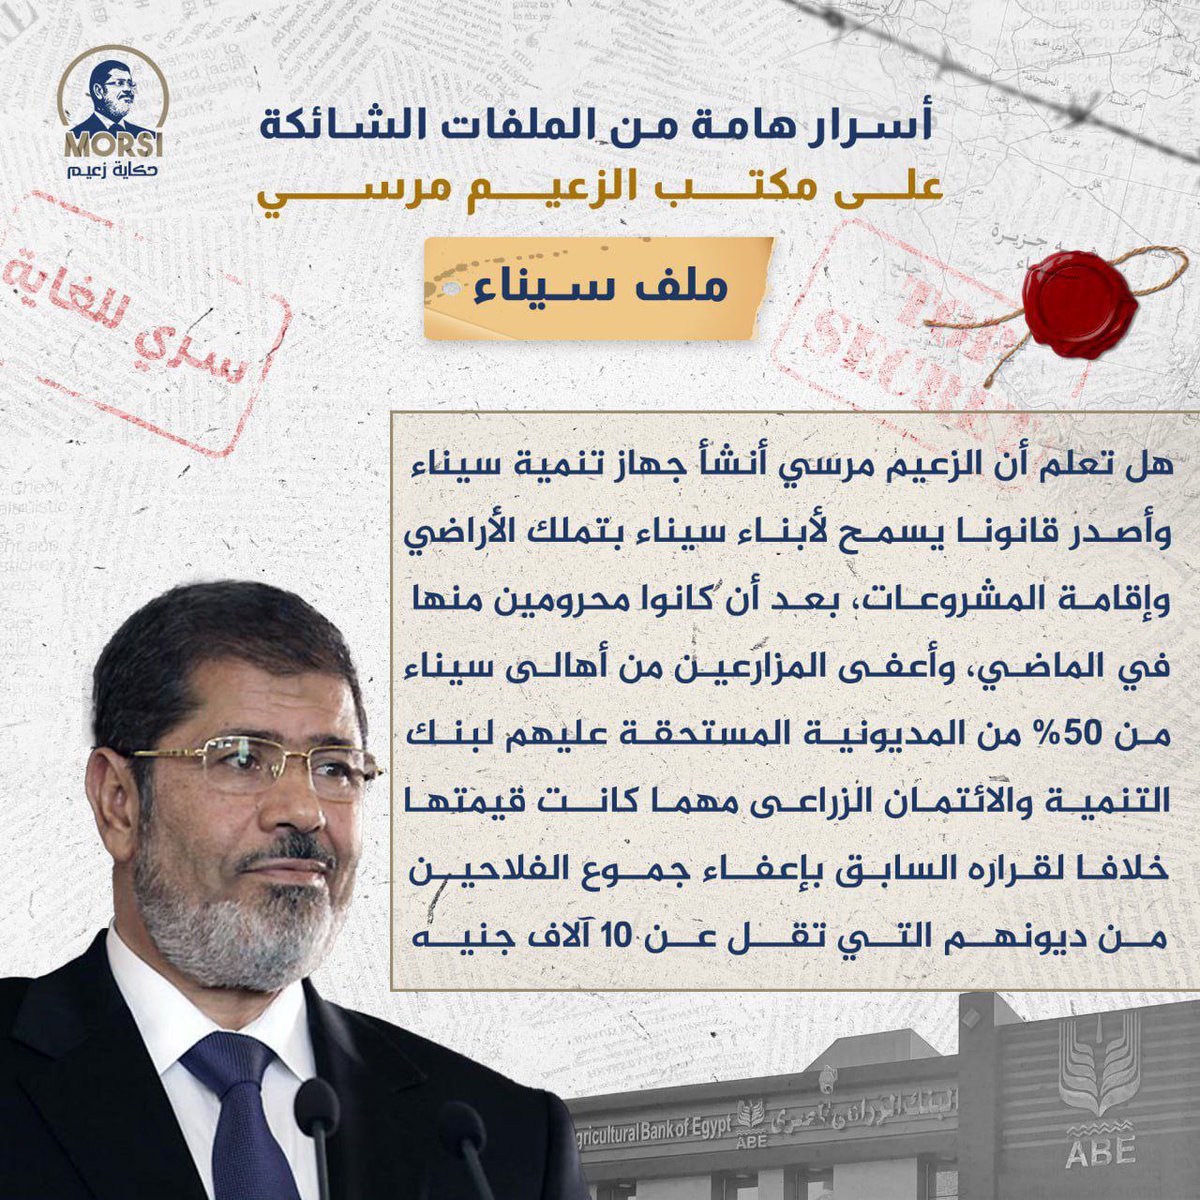 هل تعلم أن الزعيم #مرسي أنشأ جهاز تنمية سيناء وأصدر قانونا يسمح لأبناء سيناء بتملك الأراضي وإقامة المشروعات